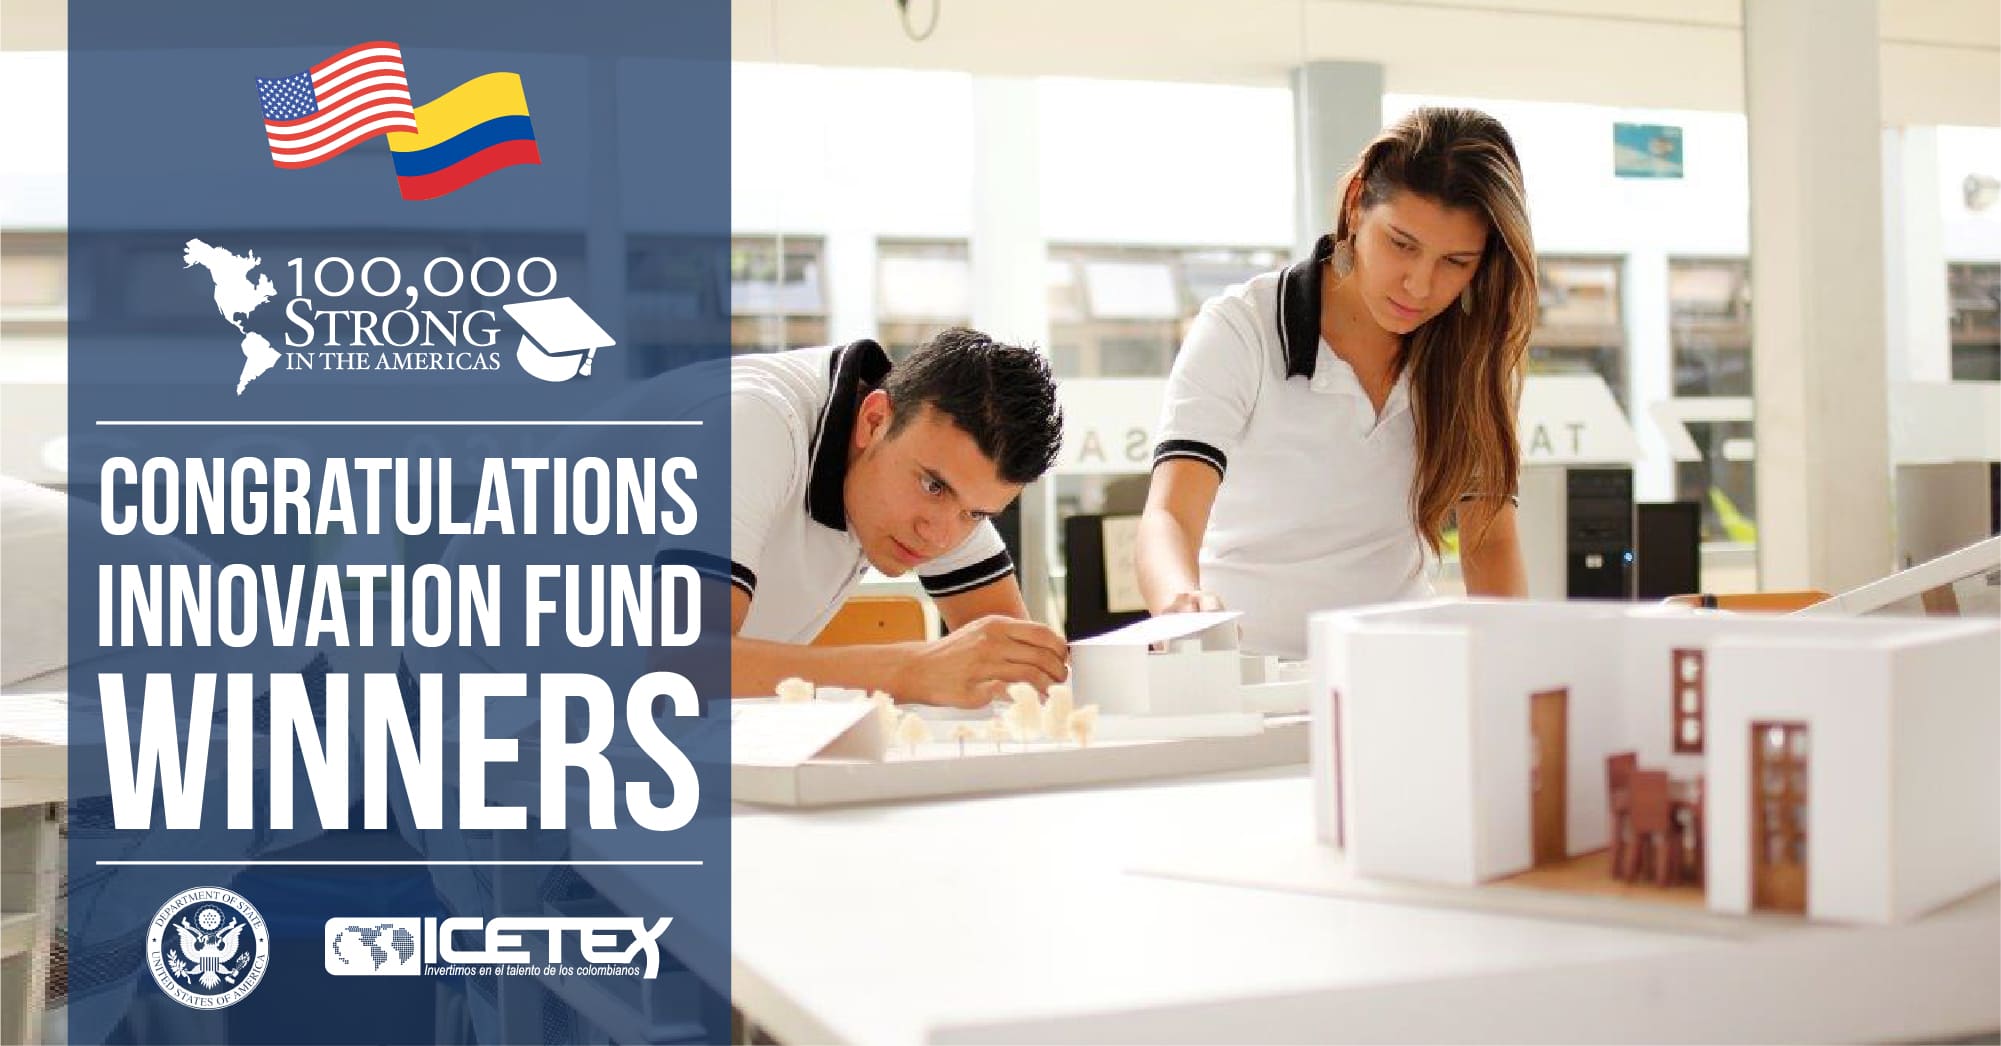 El Fondo de Innovación de 100,000 Strong in the Americas anuncia nuevas asociaciones y programas de capacitación entre los Estados Unidos y Colombia con el apoyo de ICETEX y el Departamento de Estado de los EE. UU.